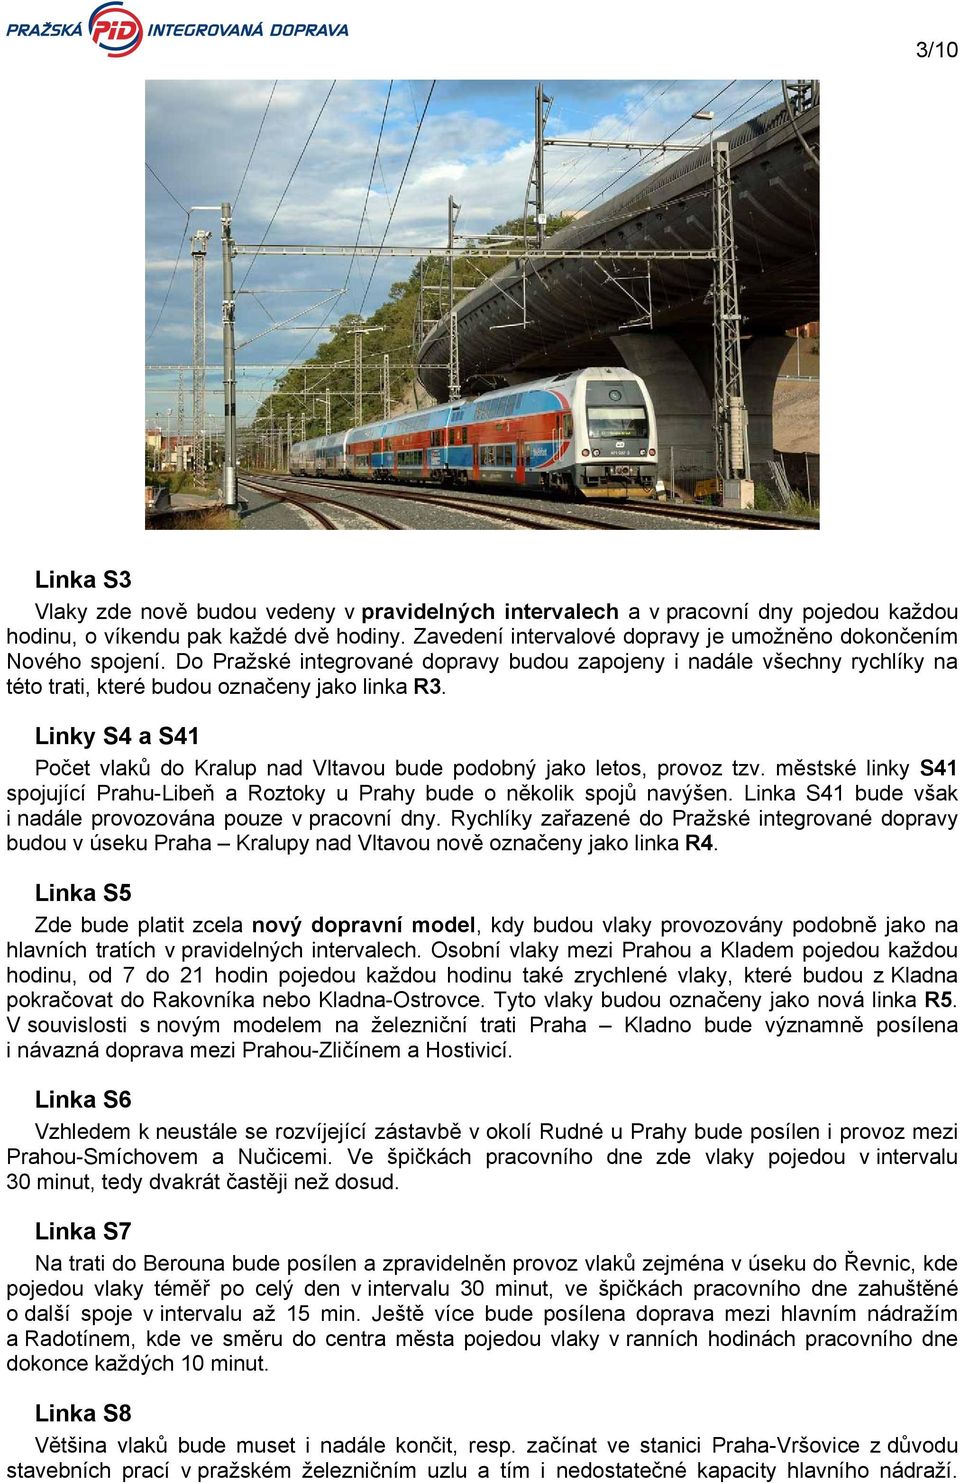 Linky S4 a S41 Počet vlaků do Kralup nad Vltavou bude podobný jako letos, provoz tzv. městské linky S41 spojující Prahu-Libeň a Roztoky u Prahy bude o několik spojů navýšen.